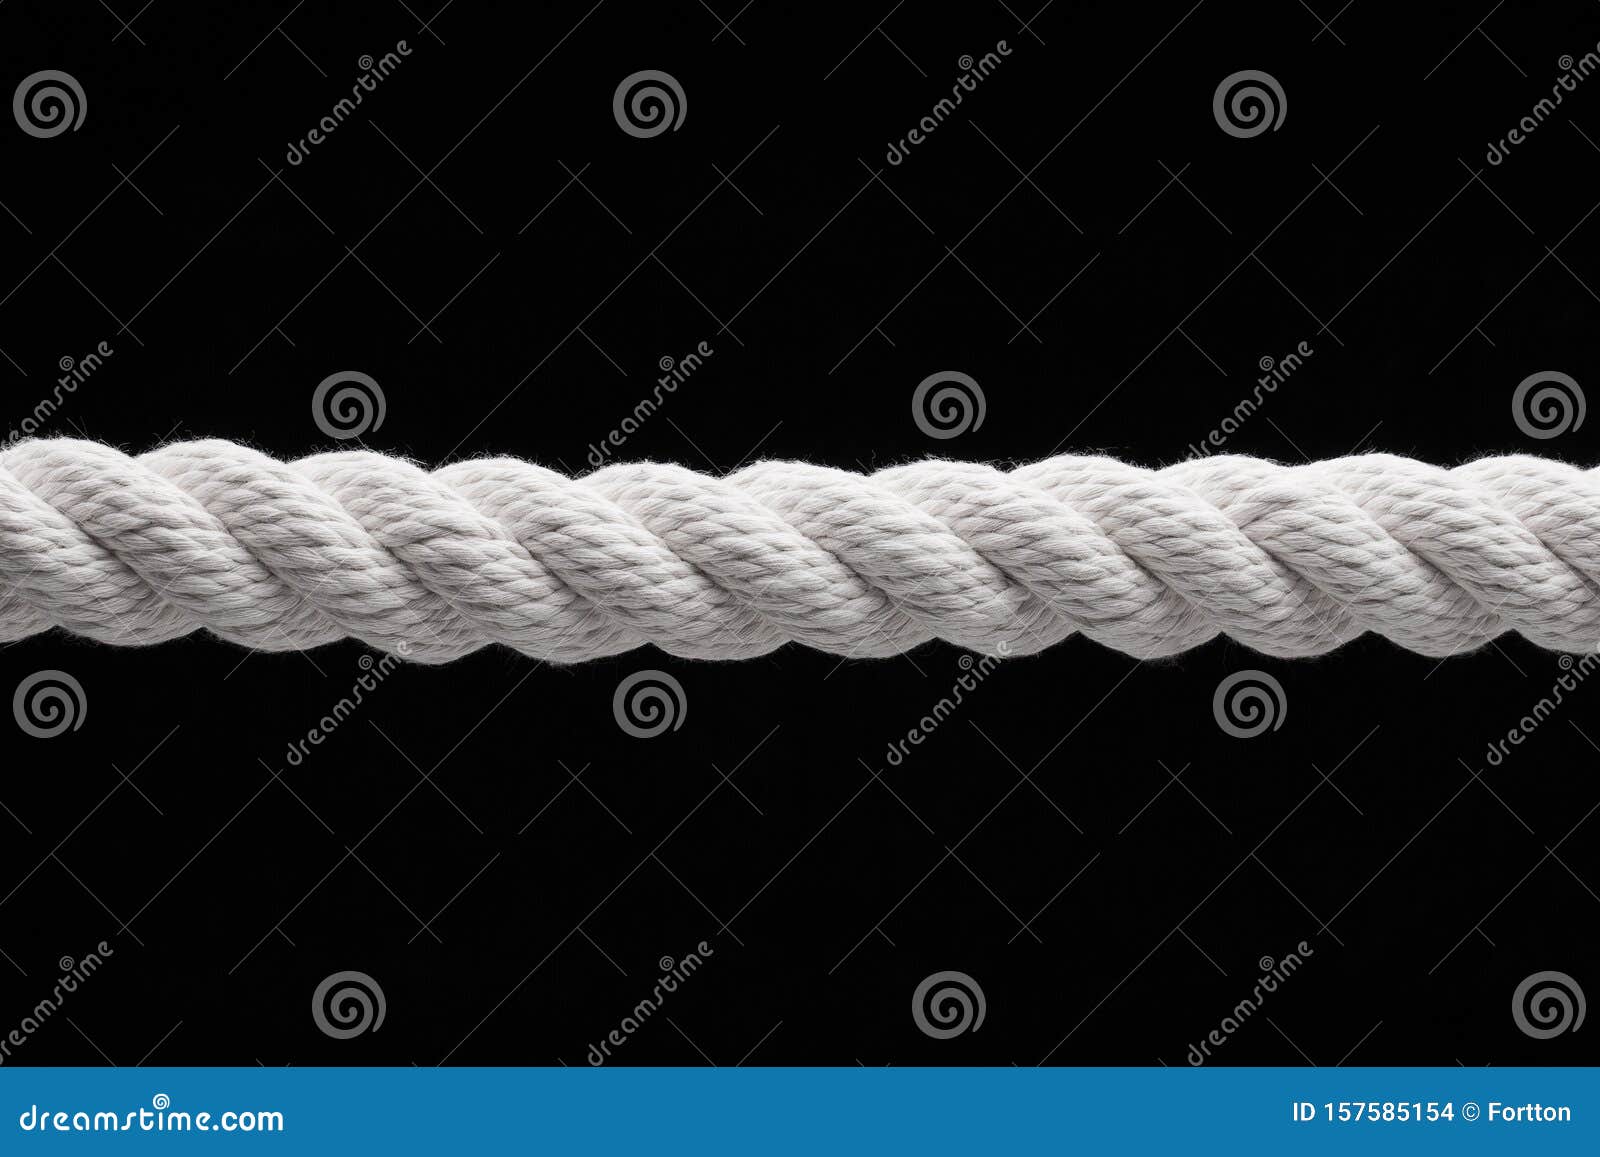 Cuerda estirada foto de archivo. Imagen de recorte, cordaje - 157585154